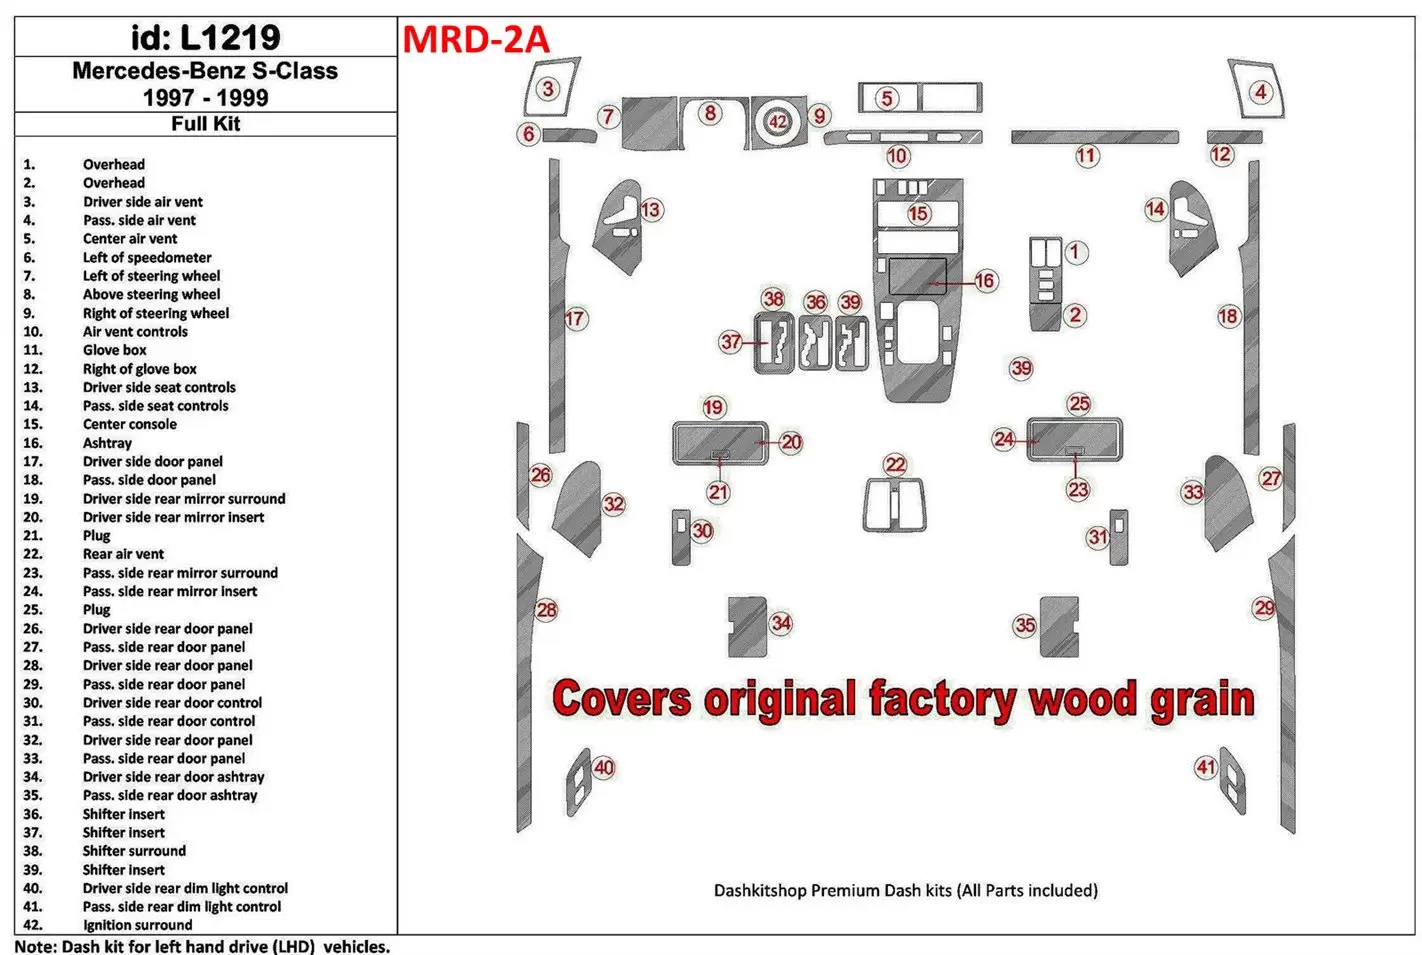 Mercedes Benz S Class 1997-1999 Ensemble Complet, Cover All OEM Wood Kit BD Kit la décoration du tableau de bord - 1 - habillage